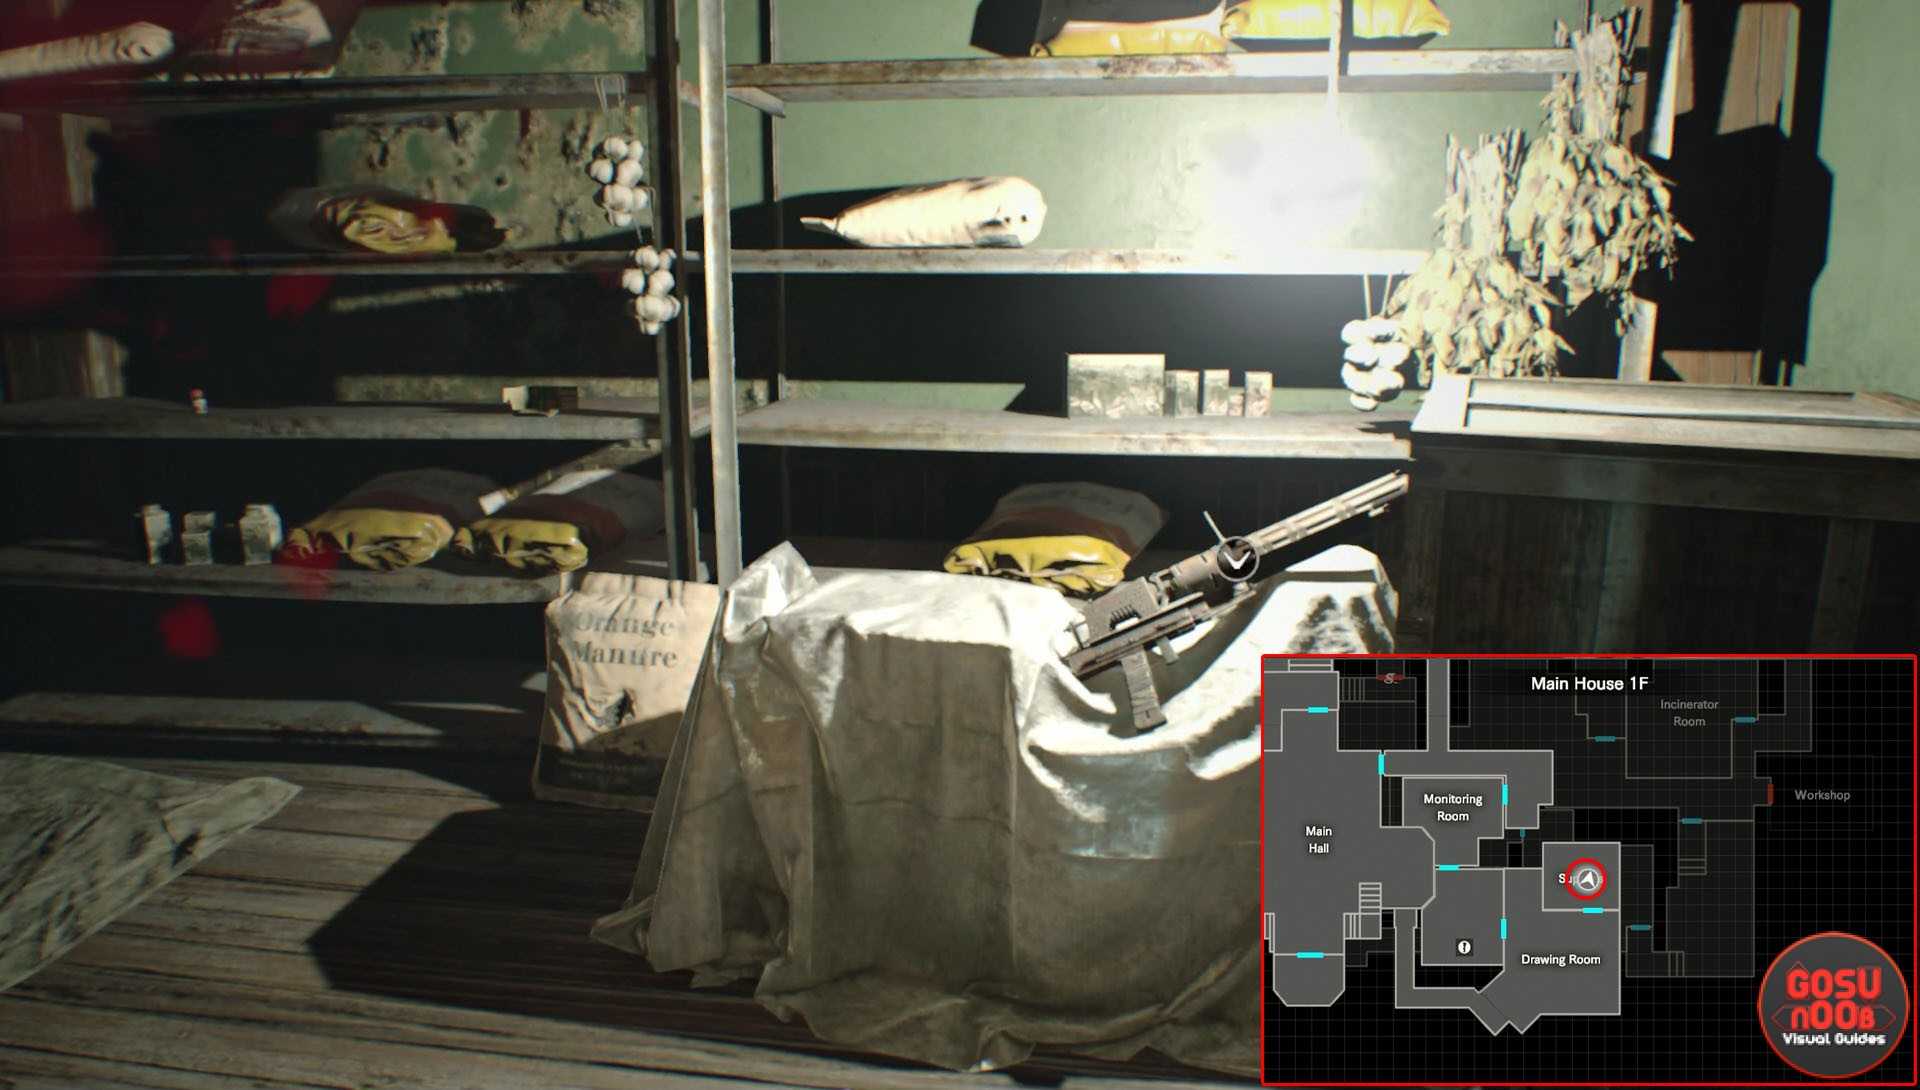 Resident evil 7: как получить пароль лукаса от комнаты для вечеринок?